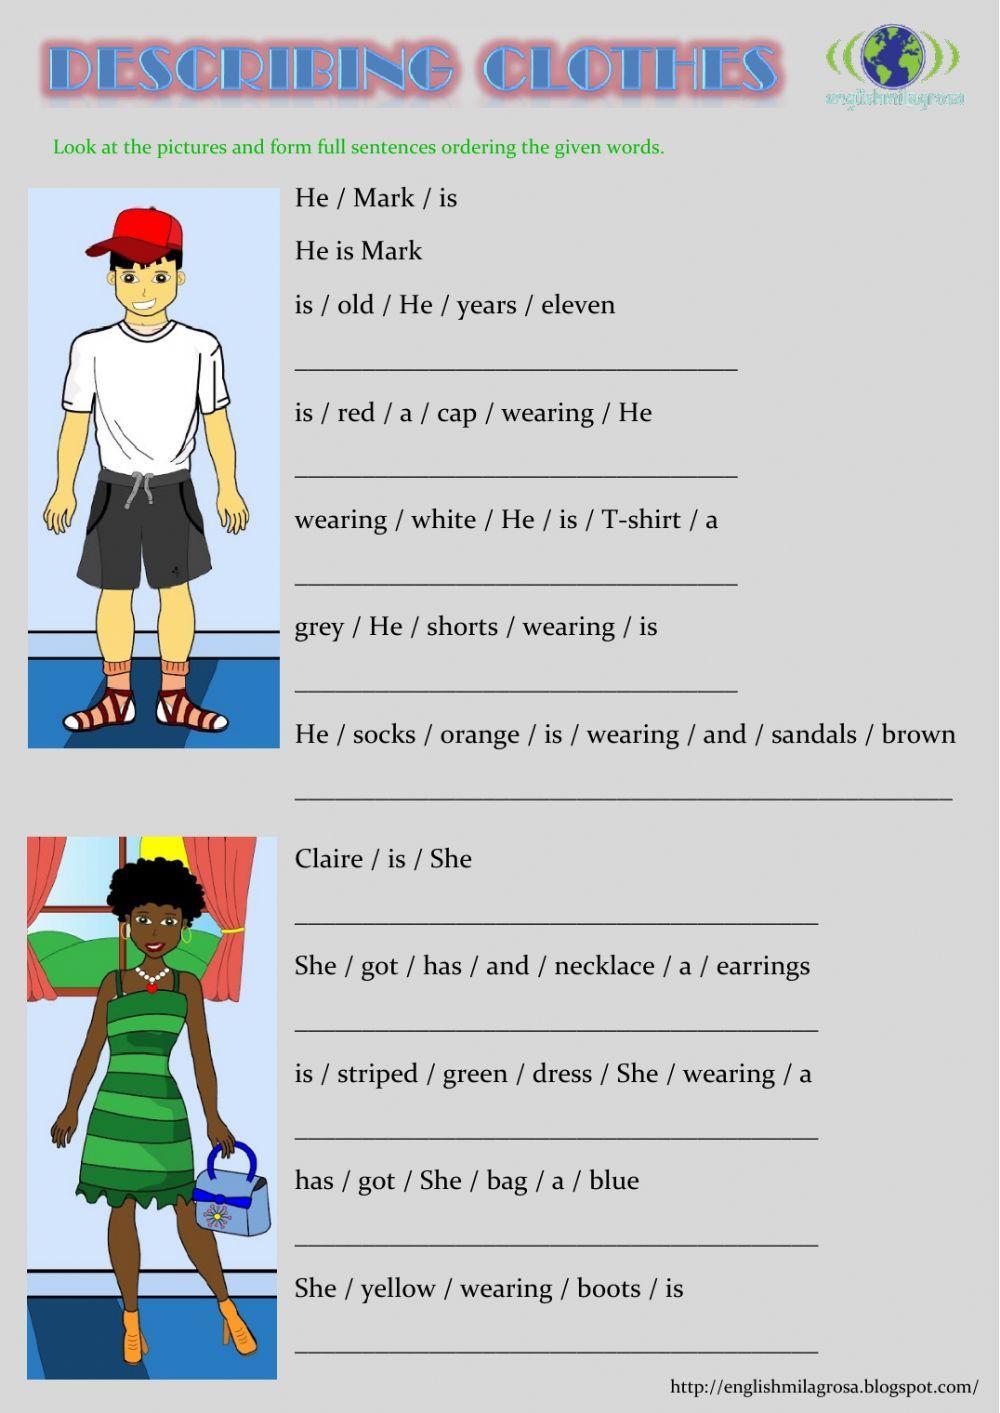 Describing clothes sentences